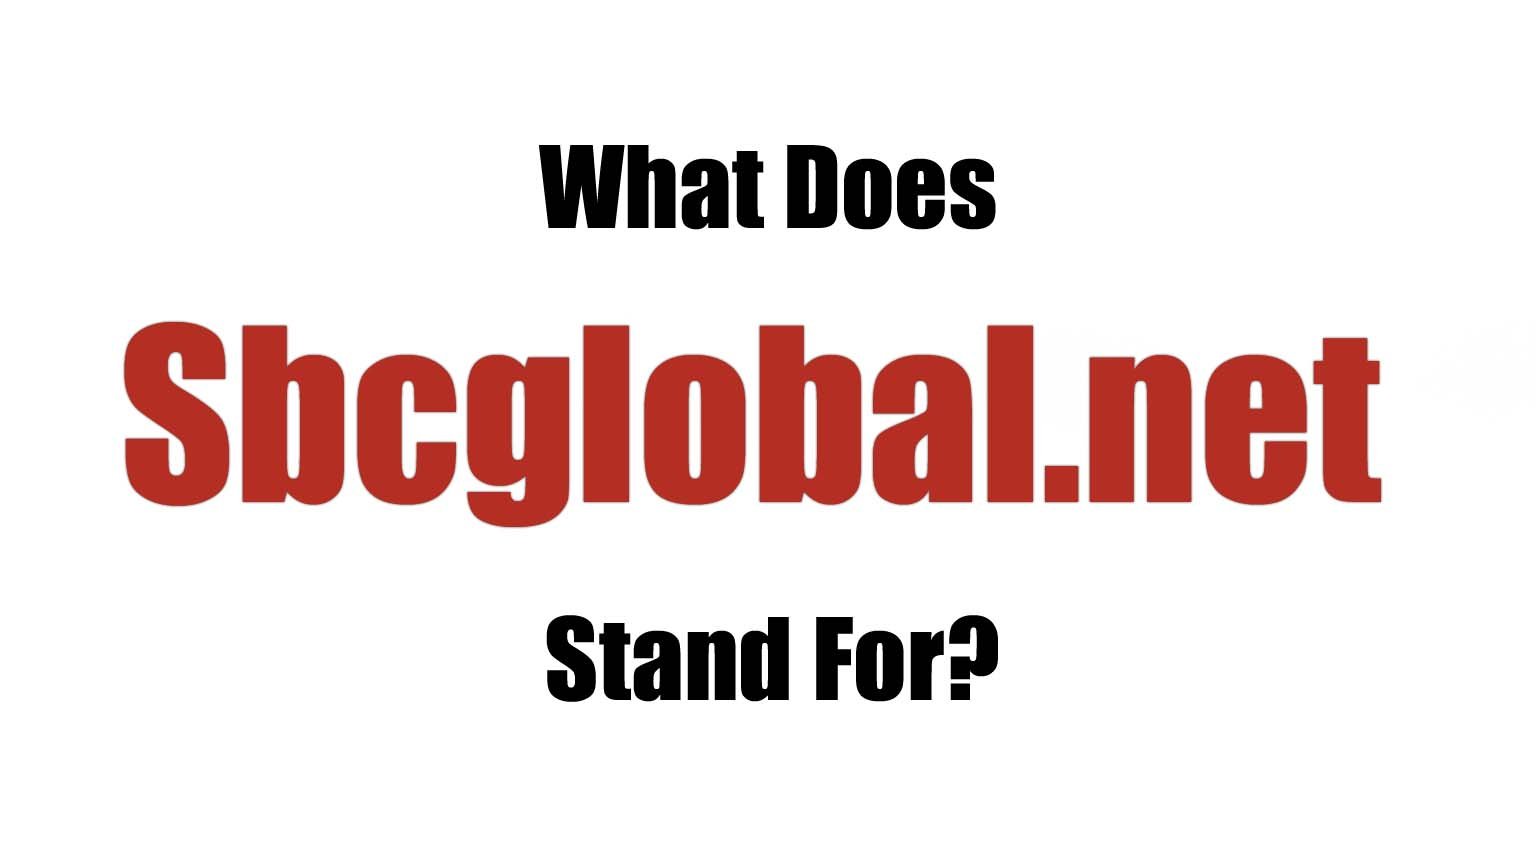 Hva står SBCGLOBAL for?